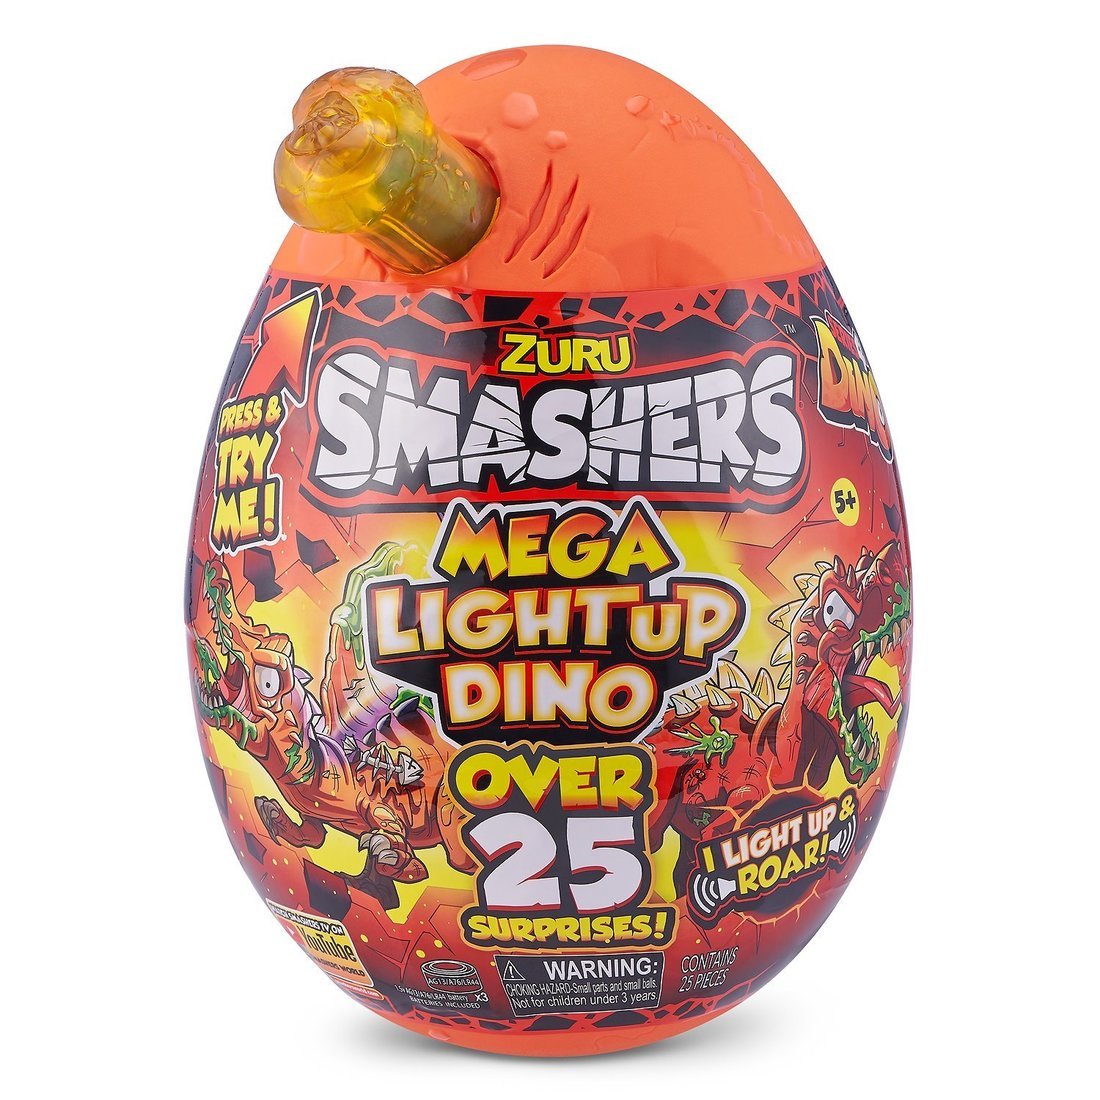 Большое яйцо Smashers Mega Lava с сюрпризами и свет эффектами 25 сюрпризов, в ассорт. (Вид 1)